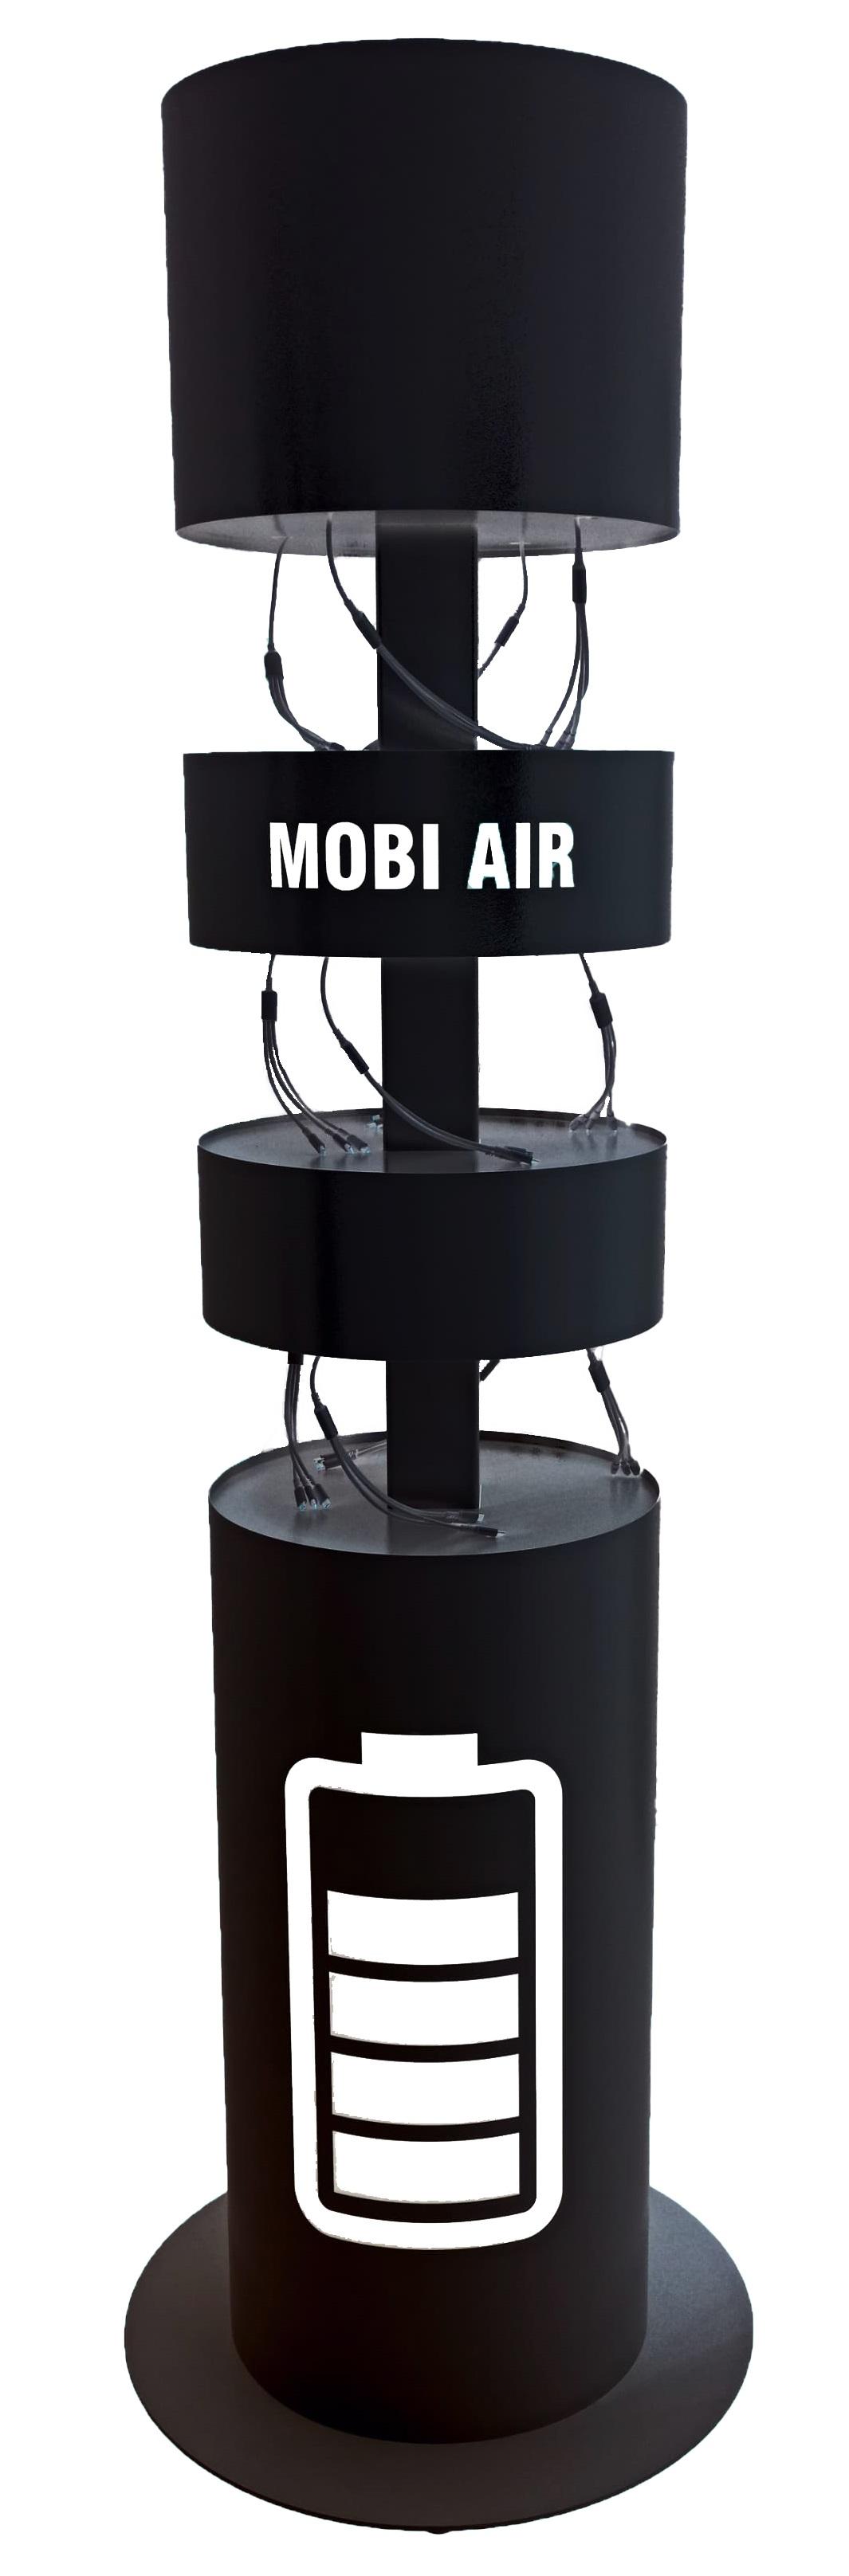 Автомат для зарядки мобильных устройств <strong>MOBI AIR</strong>